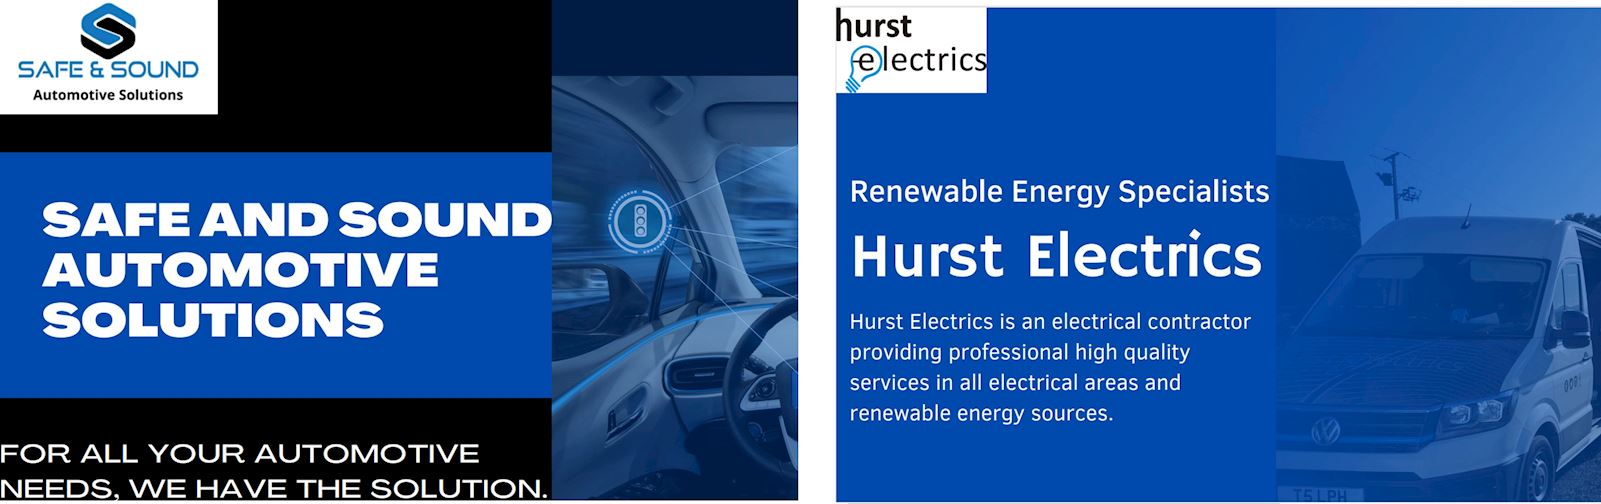 Hurst Electrics & Safe & Sound Automotive